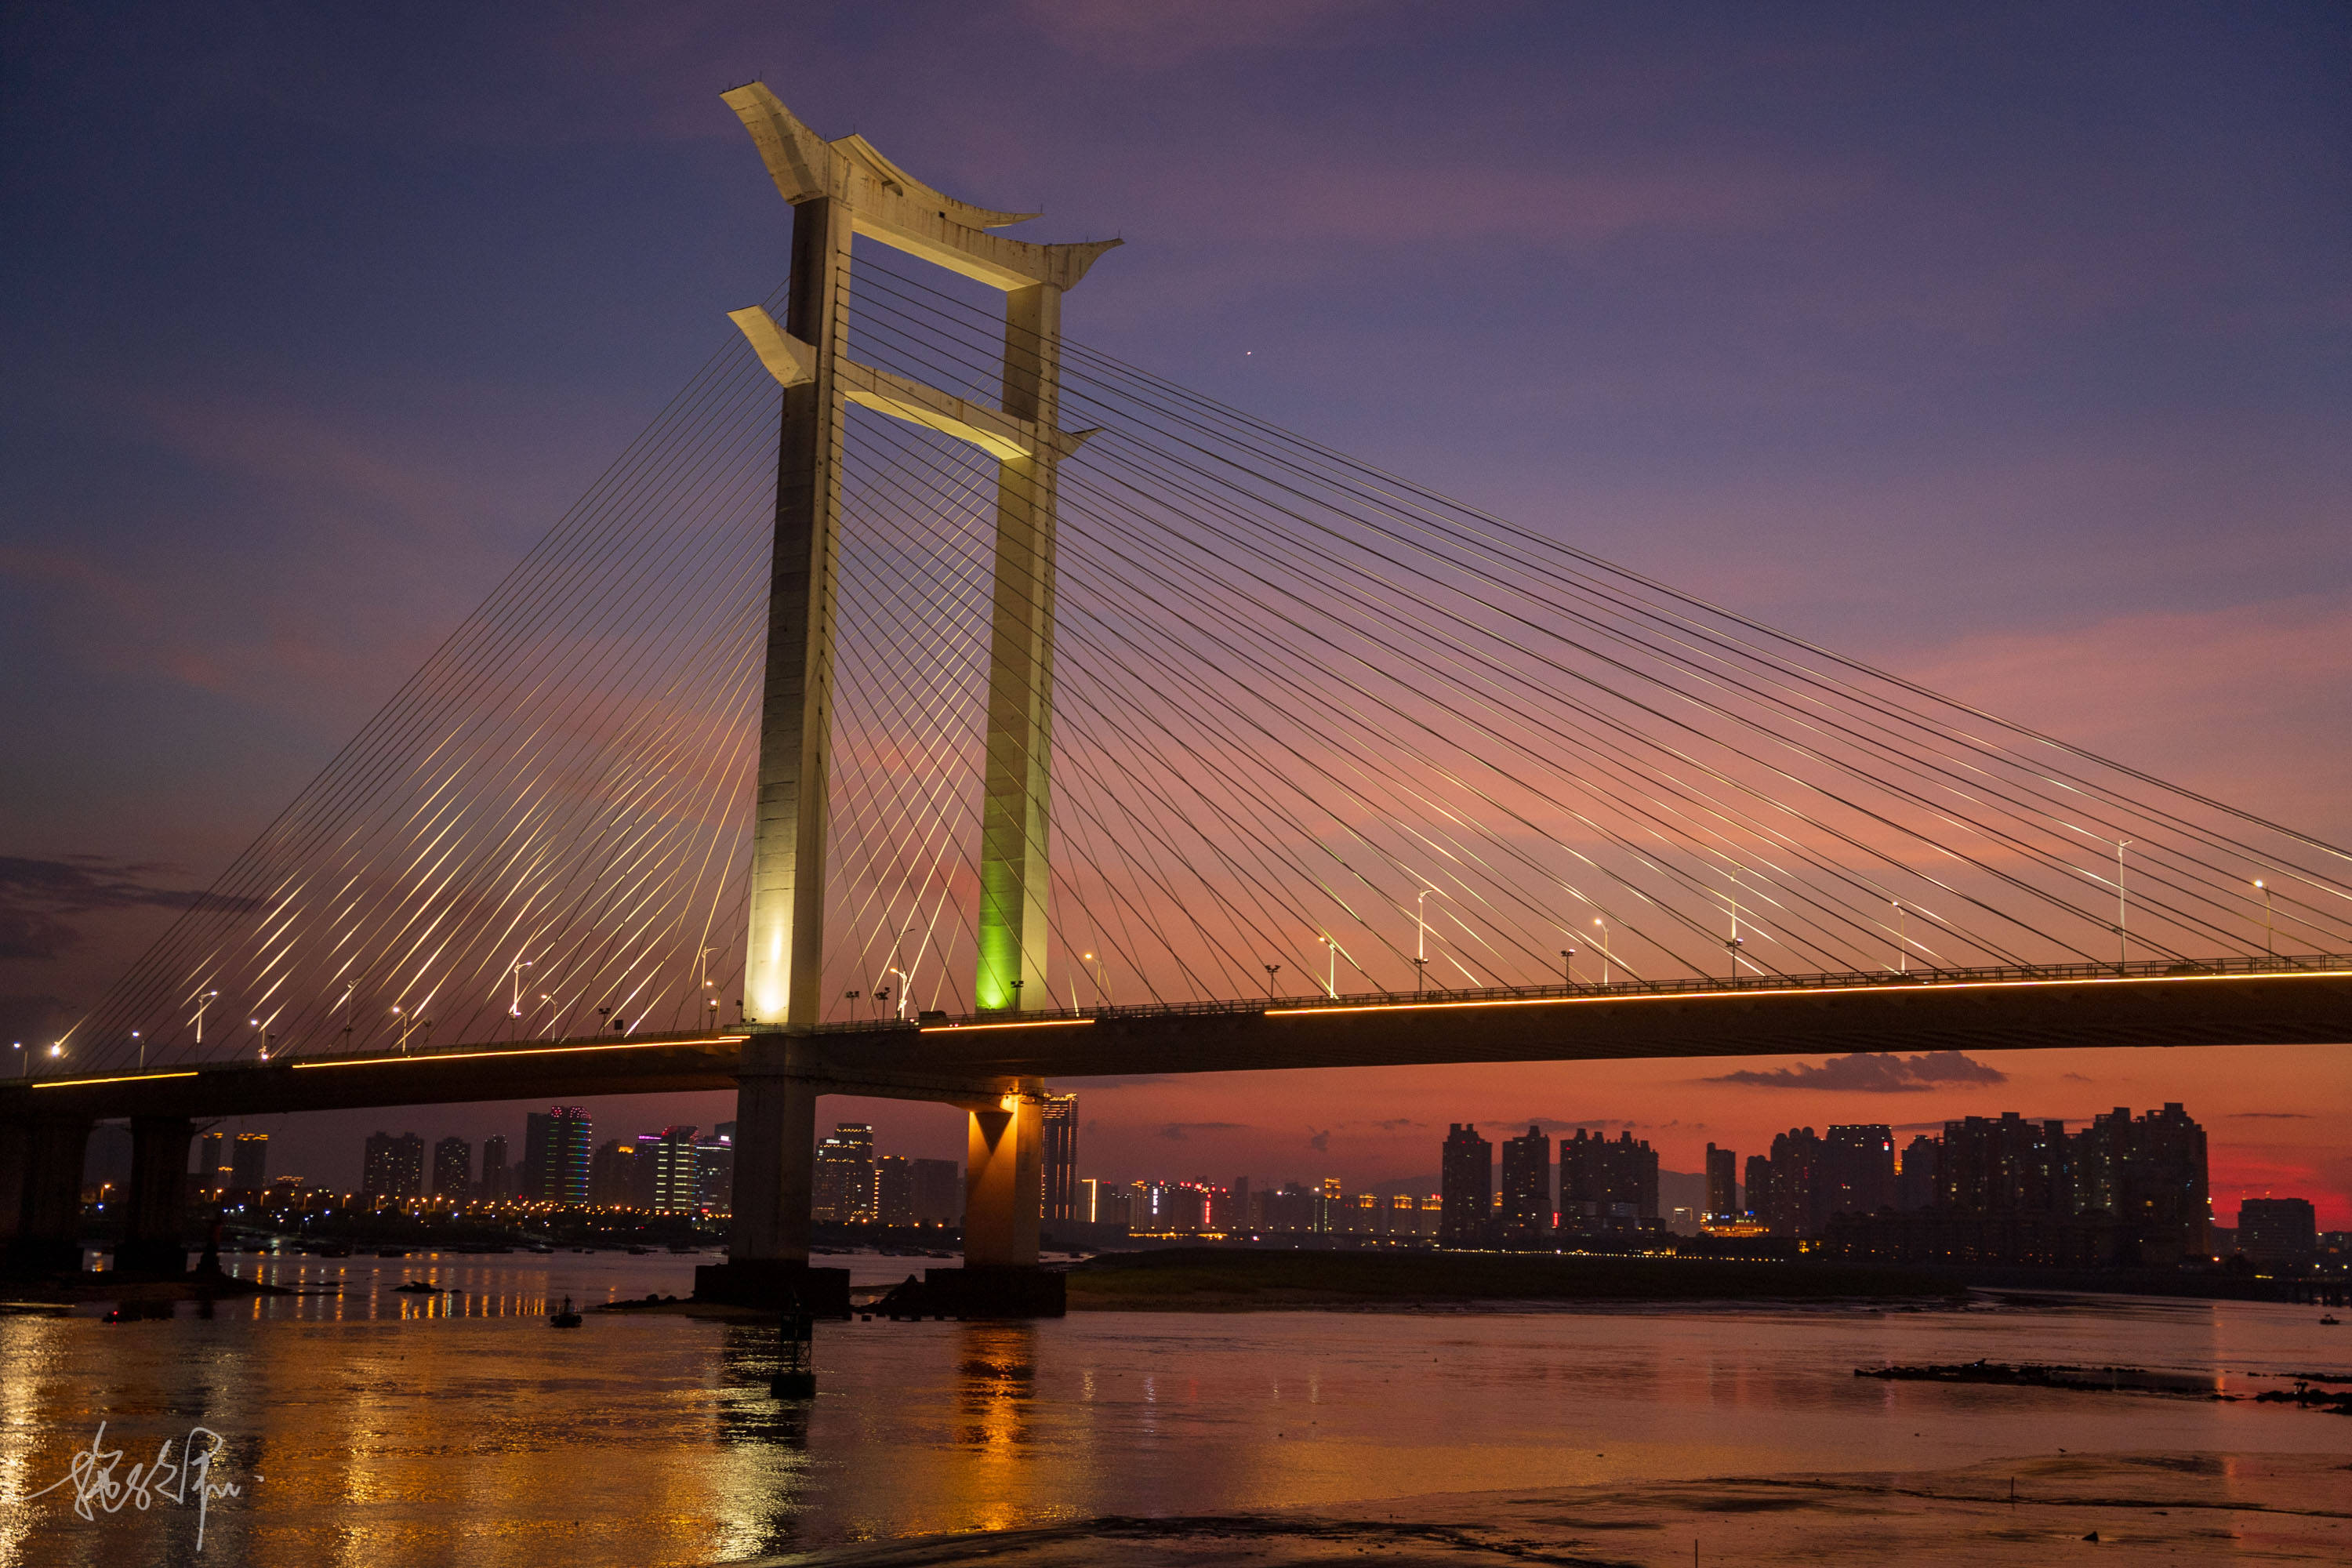 原创晋江大桥连接泉州与晋江石狮的交通要道日落十分美丽